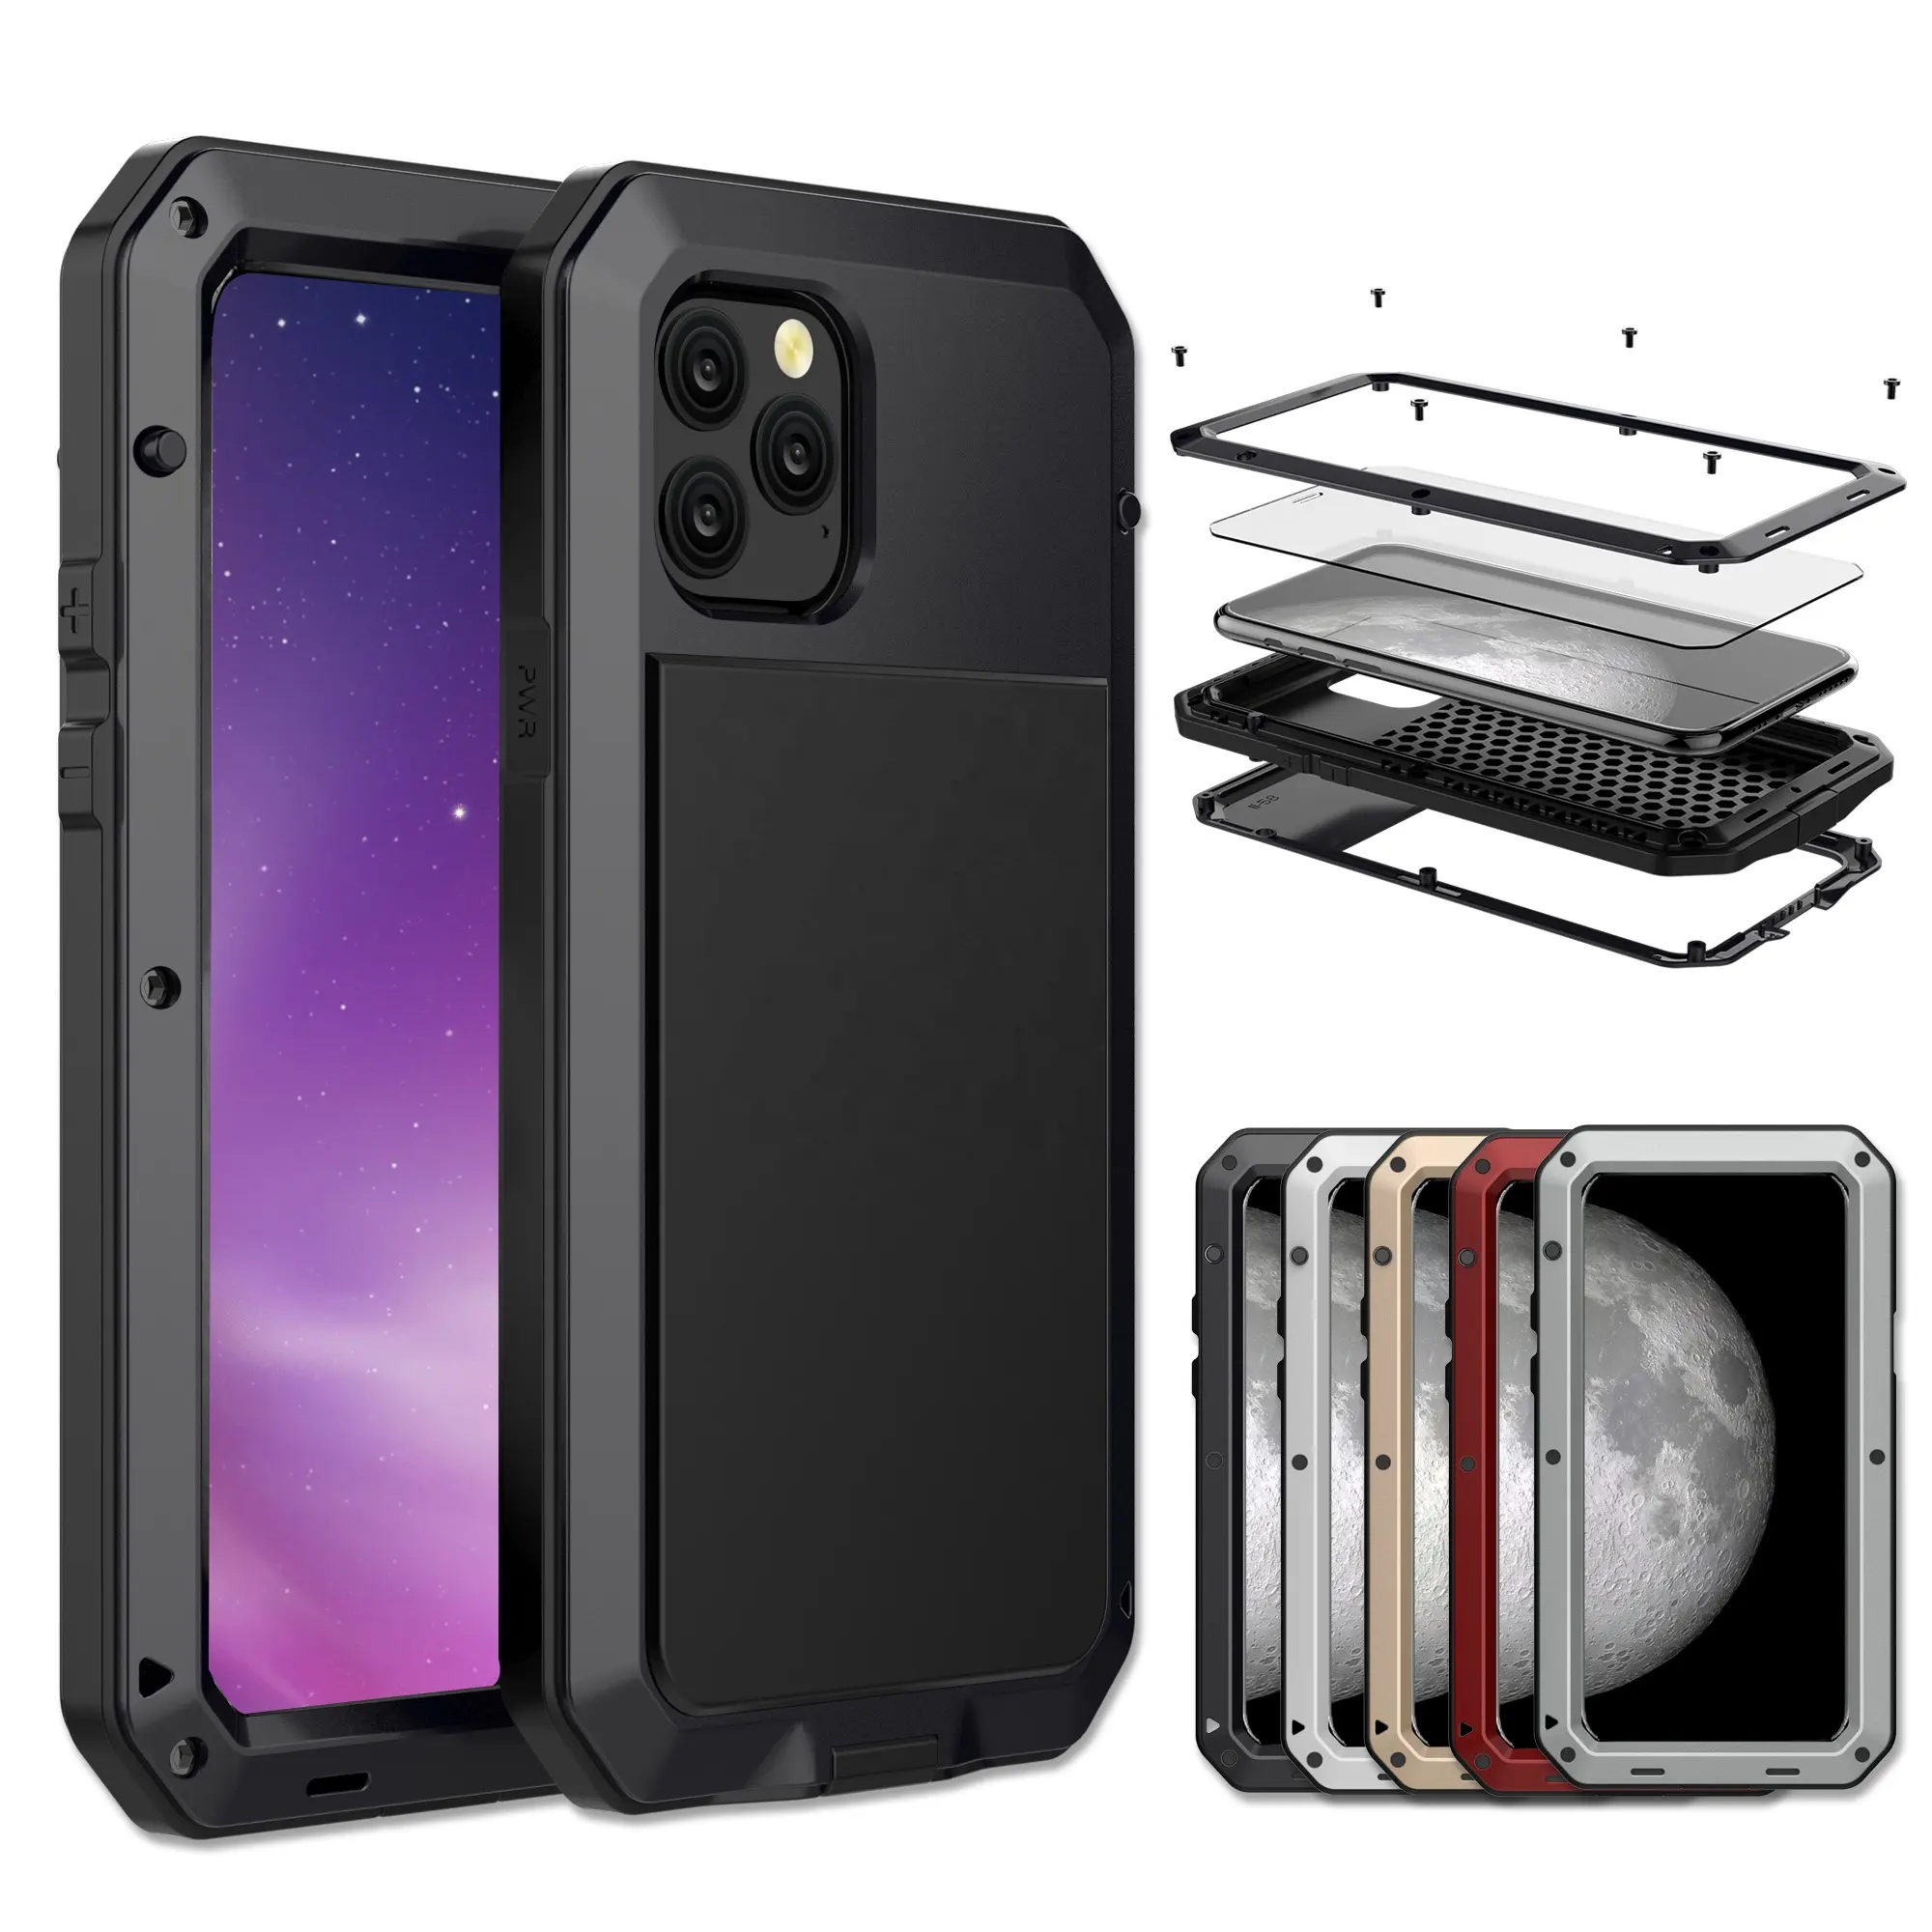 iphone 5 aluminum cases